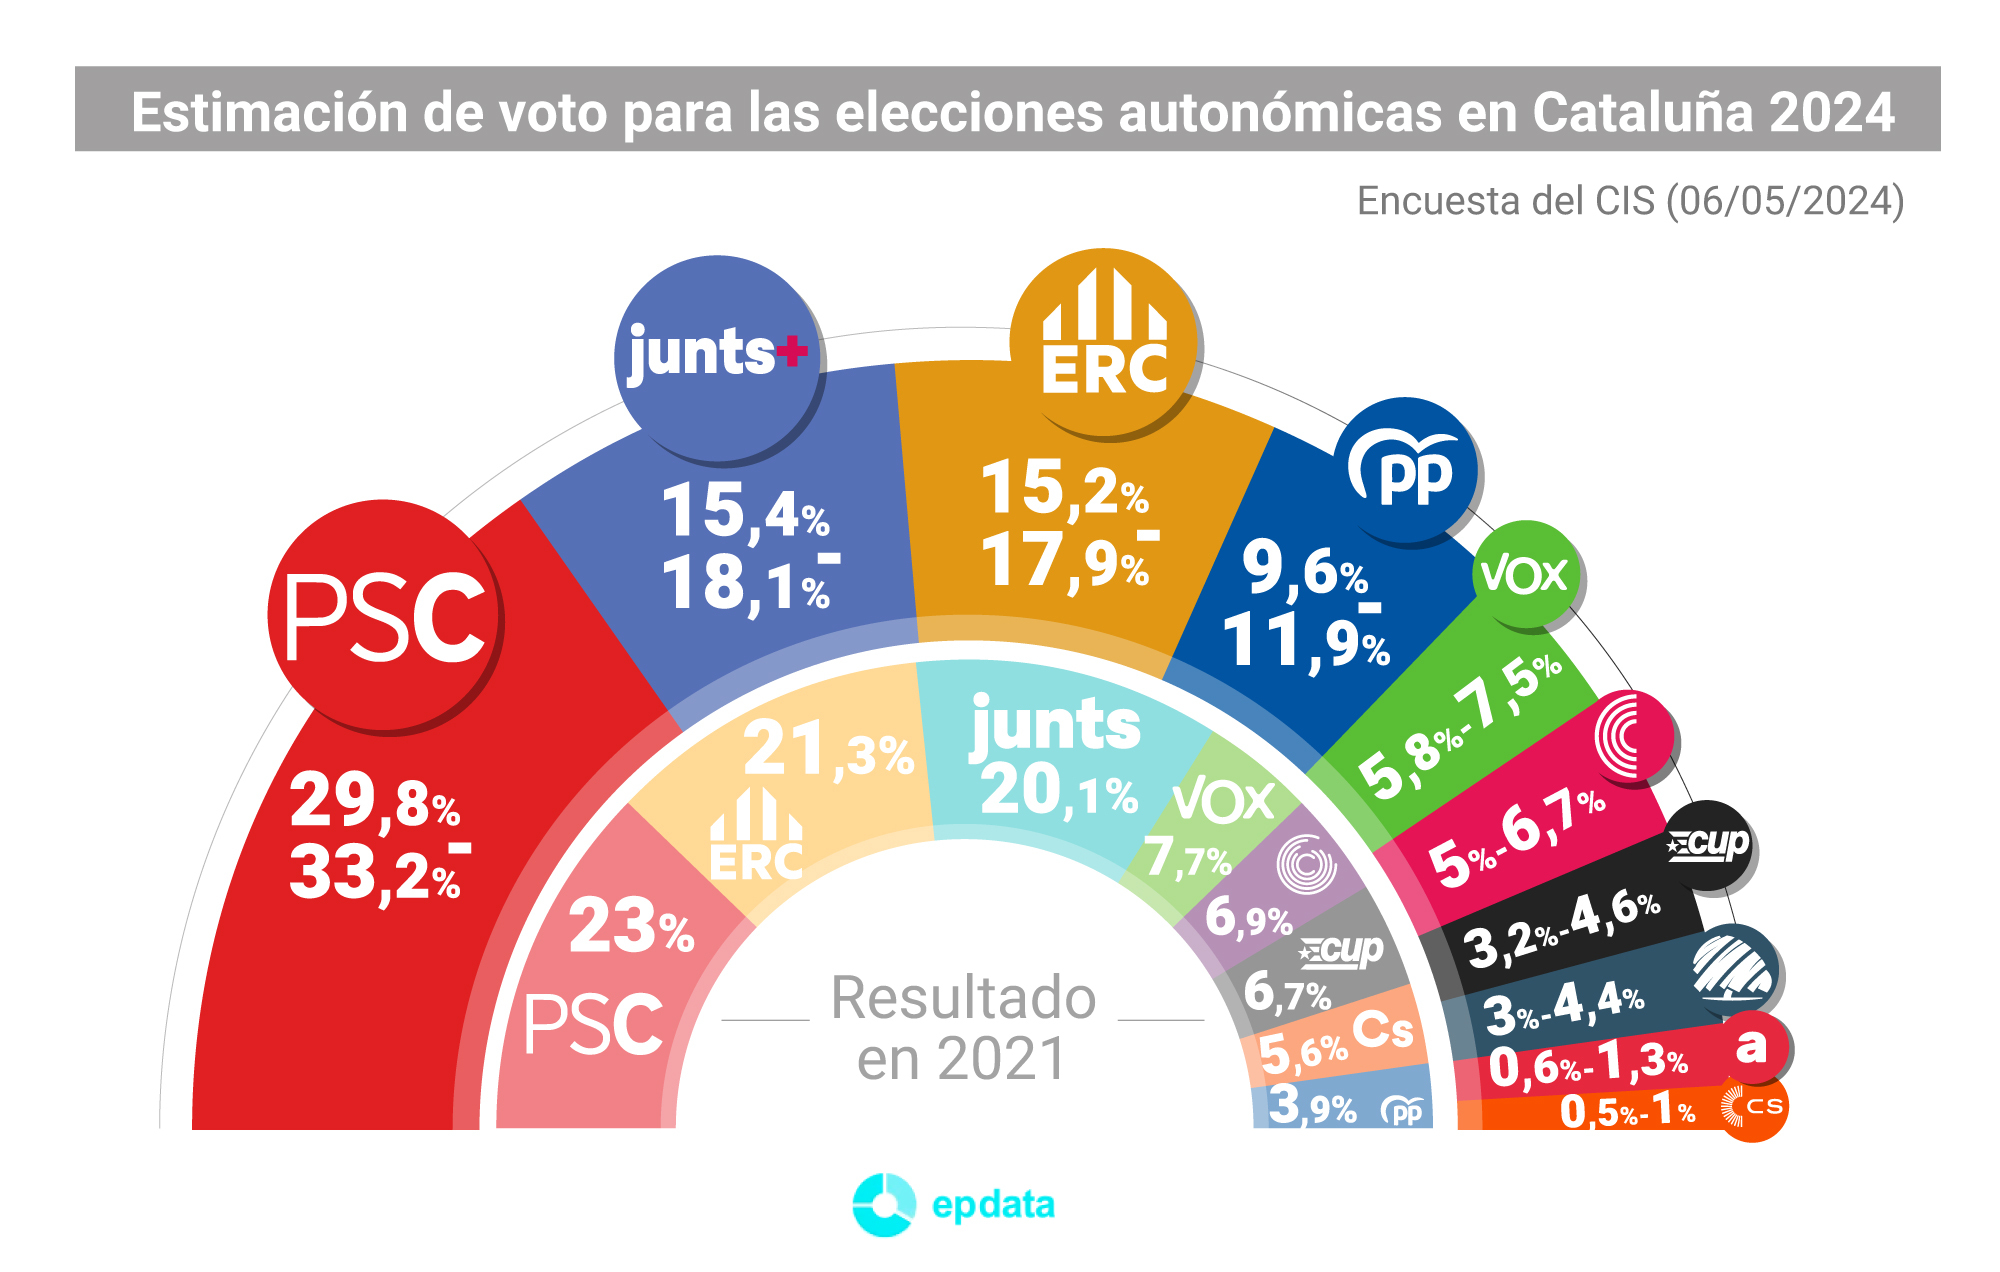 Encuesta del CIS de las elecciones catalanas